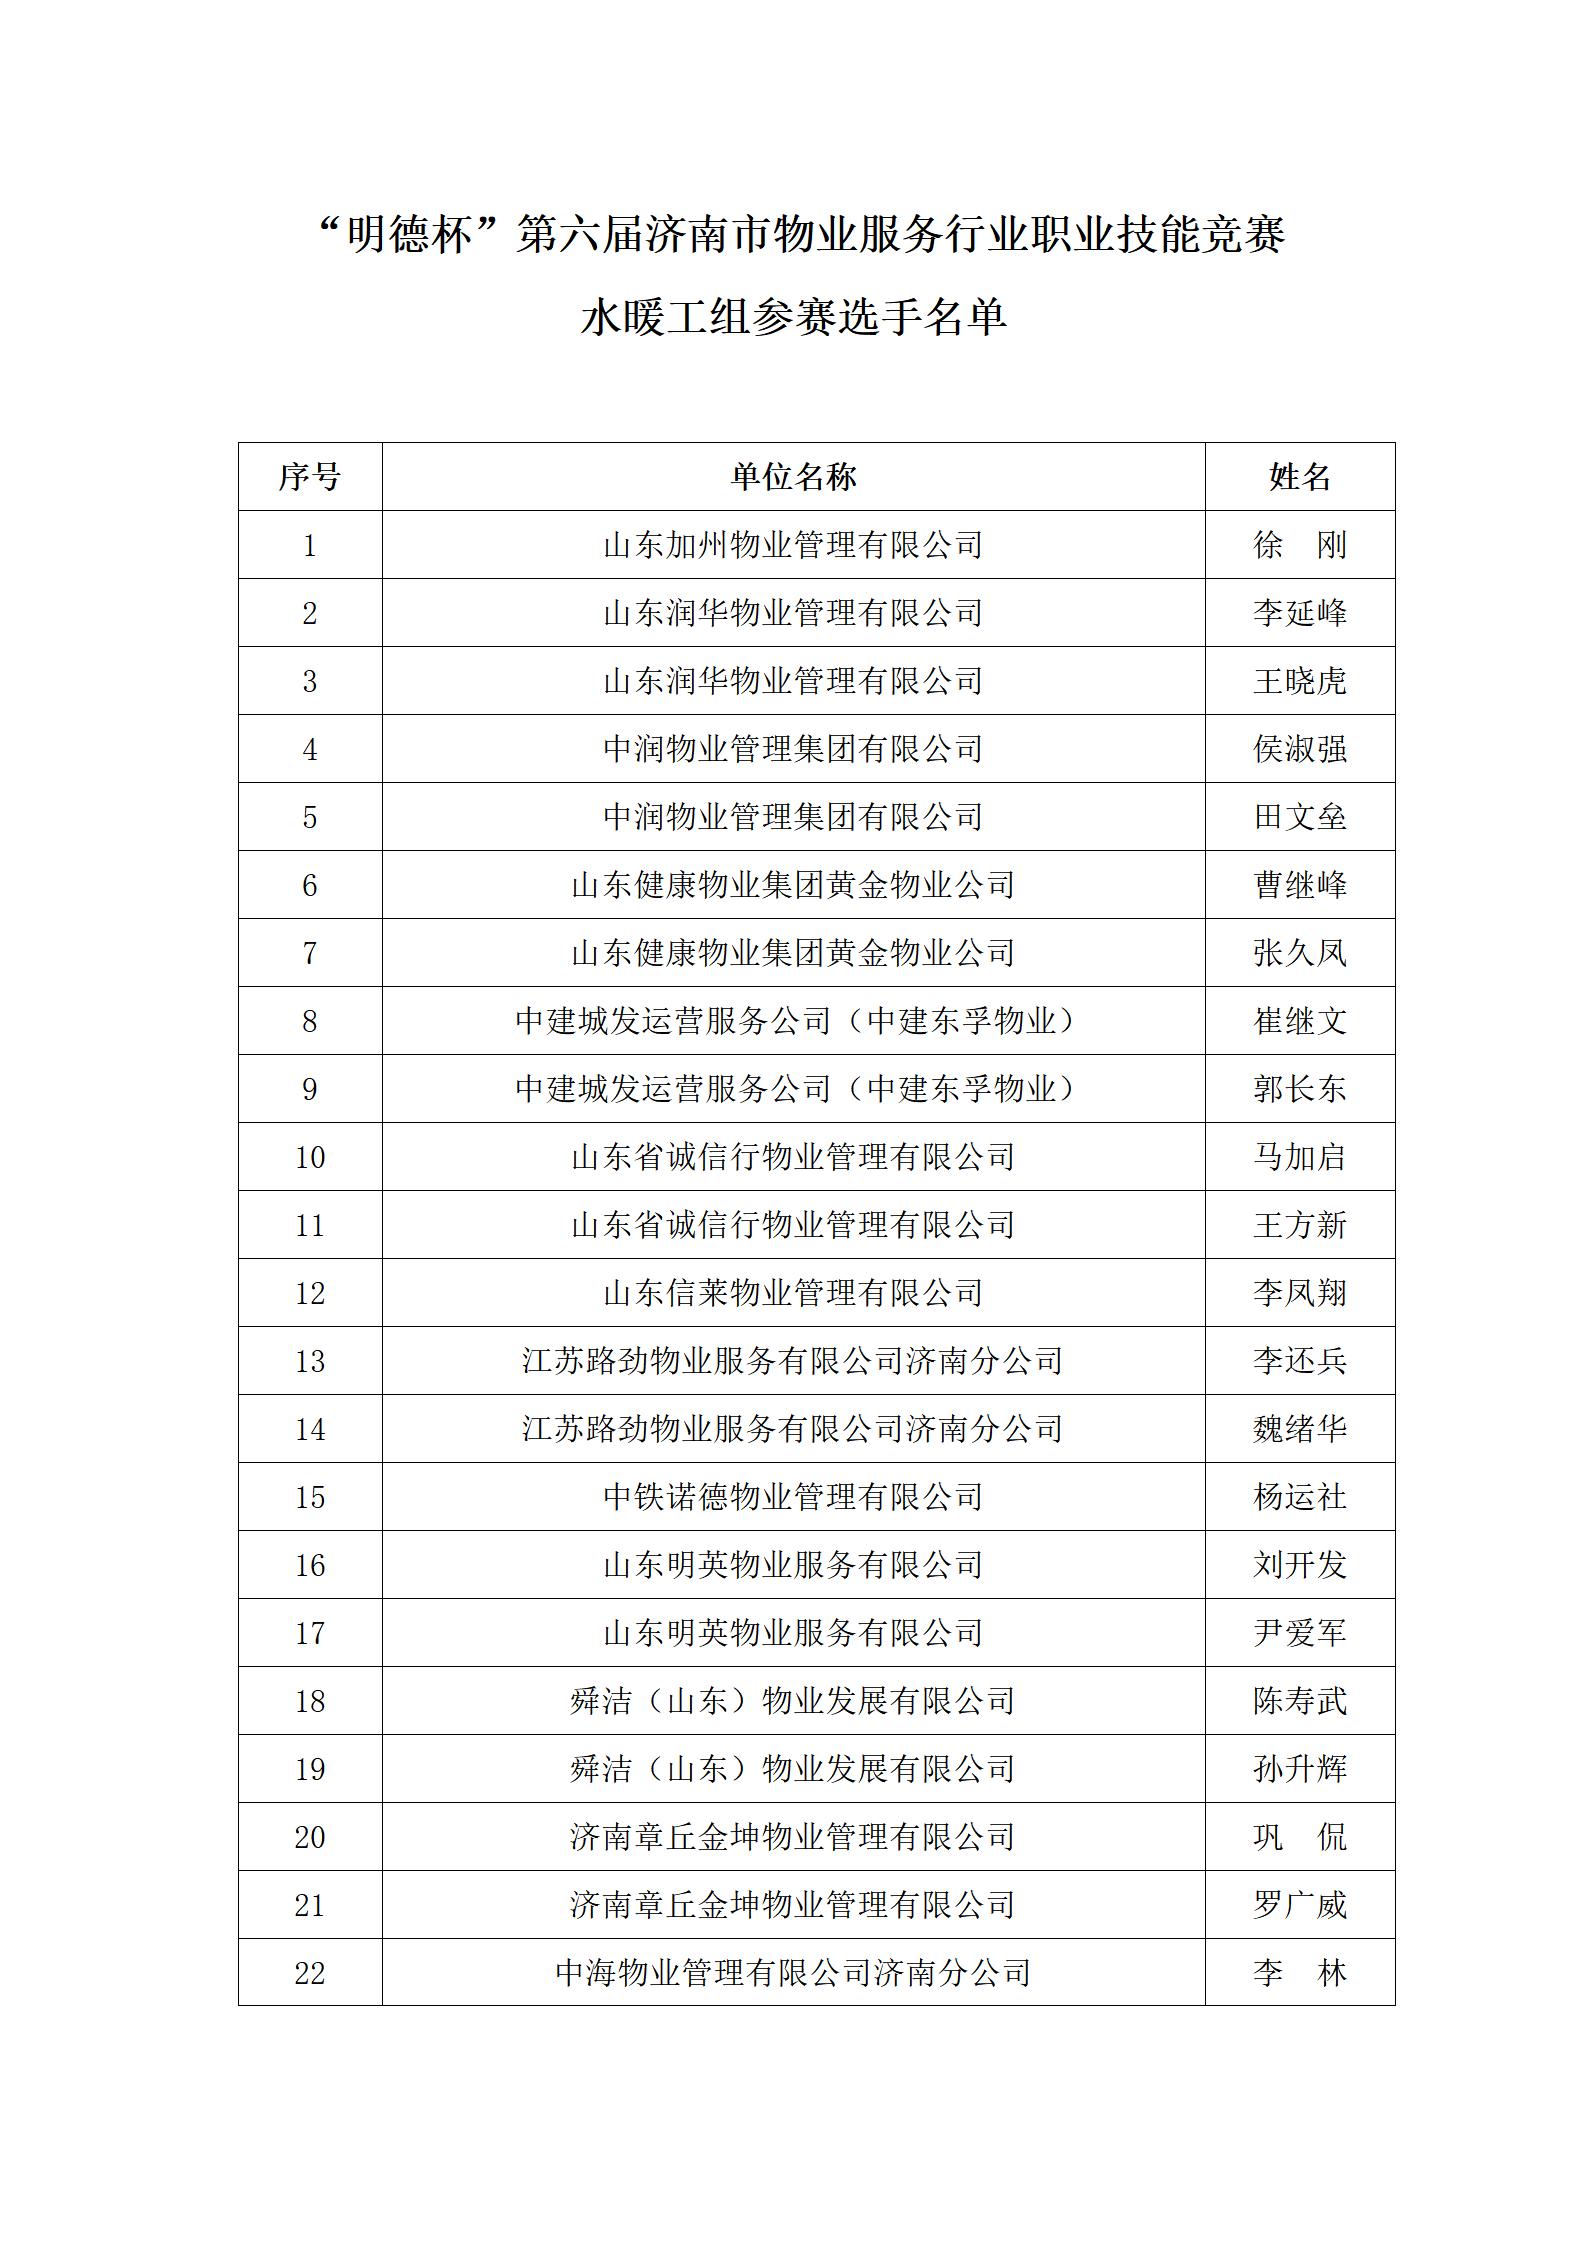 关于“明德杯”第六届济南市物业服务行业职业技能竞赛选手名单的公示_08